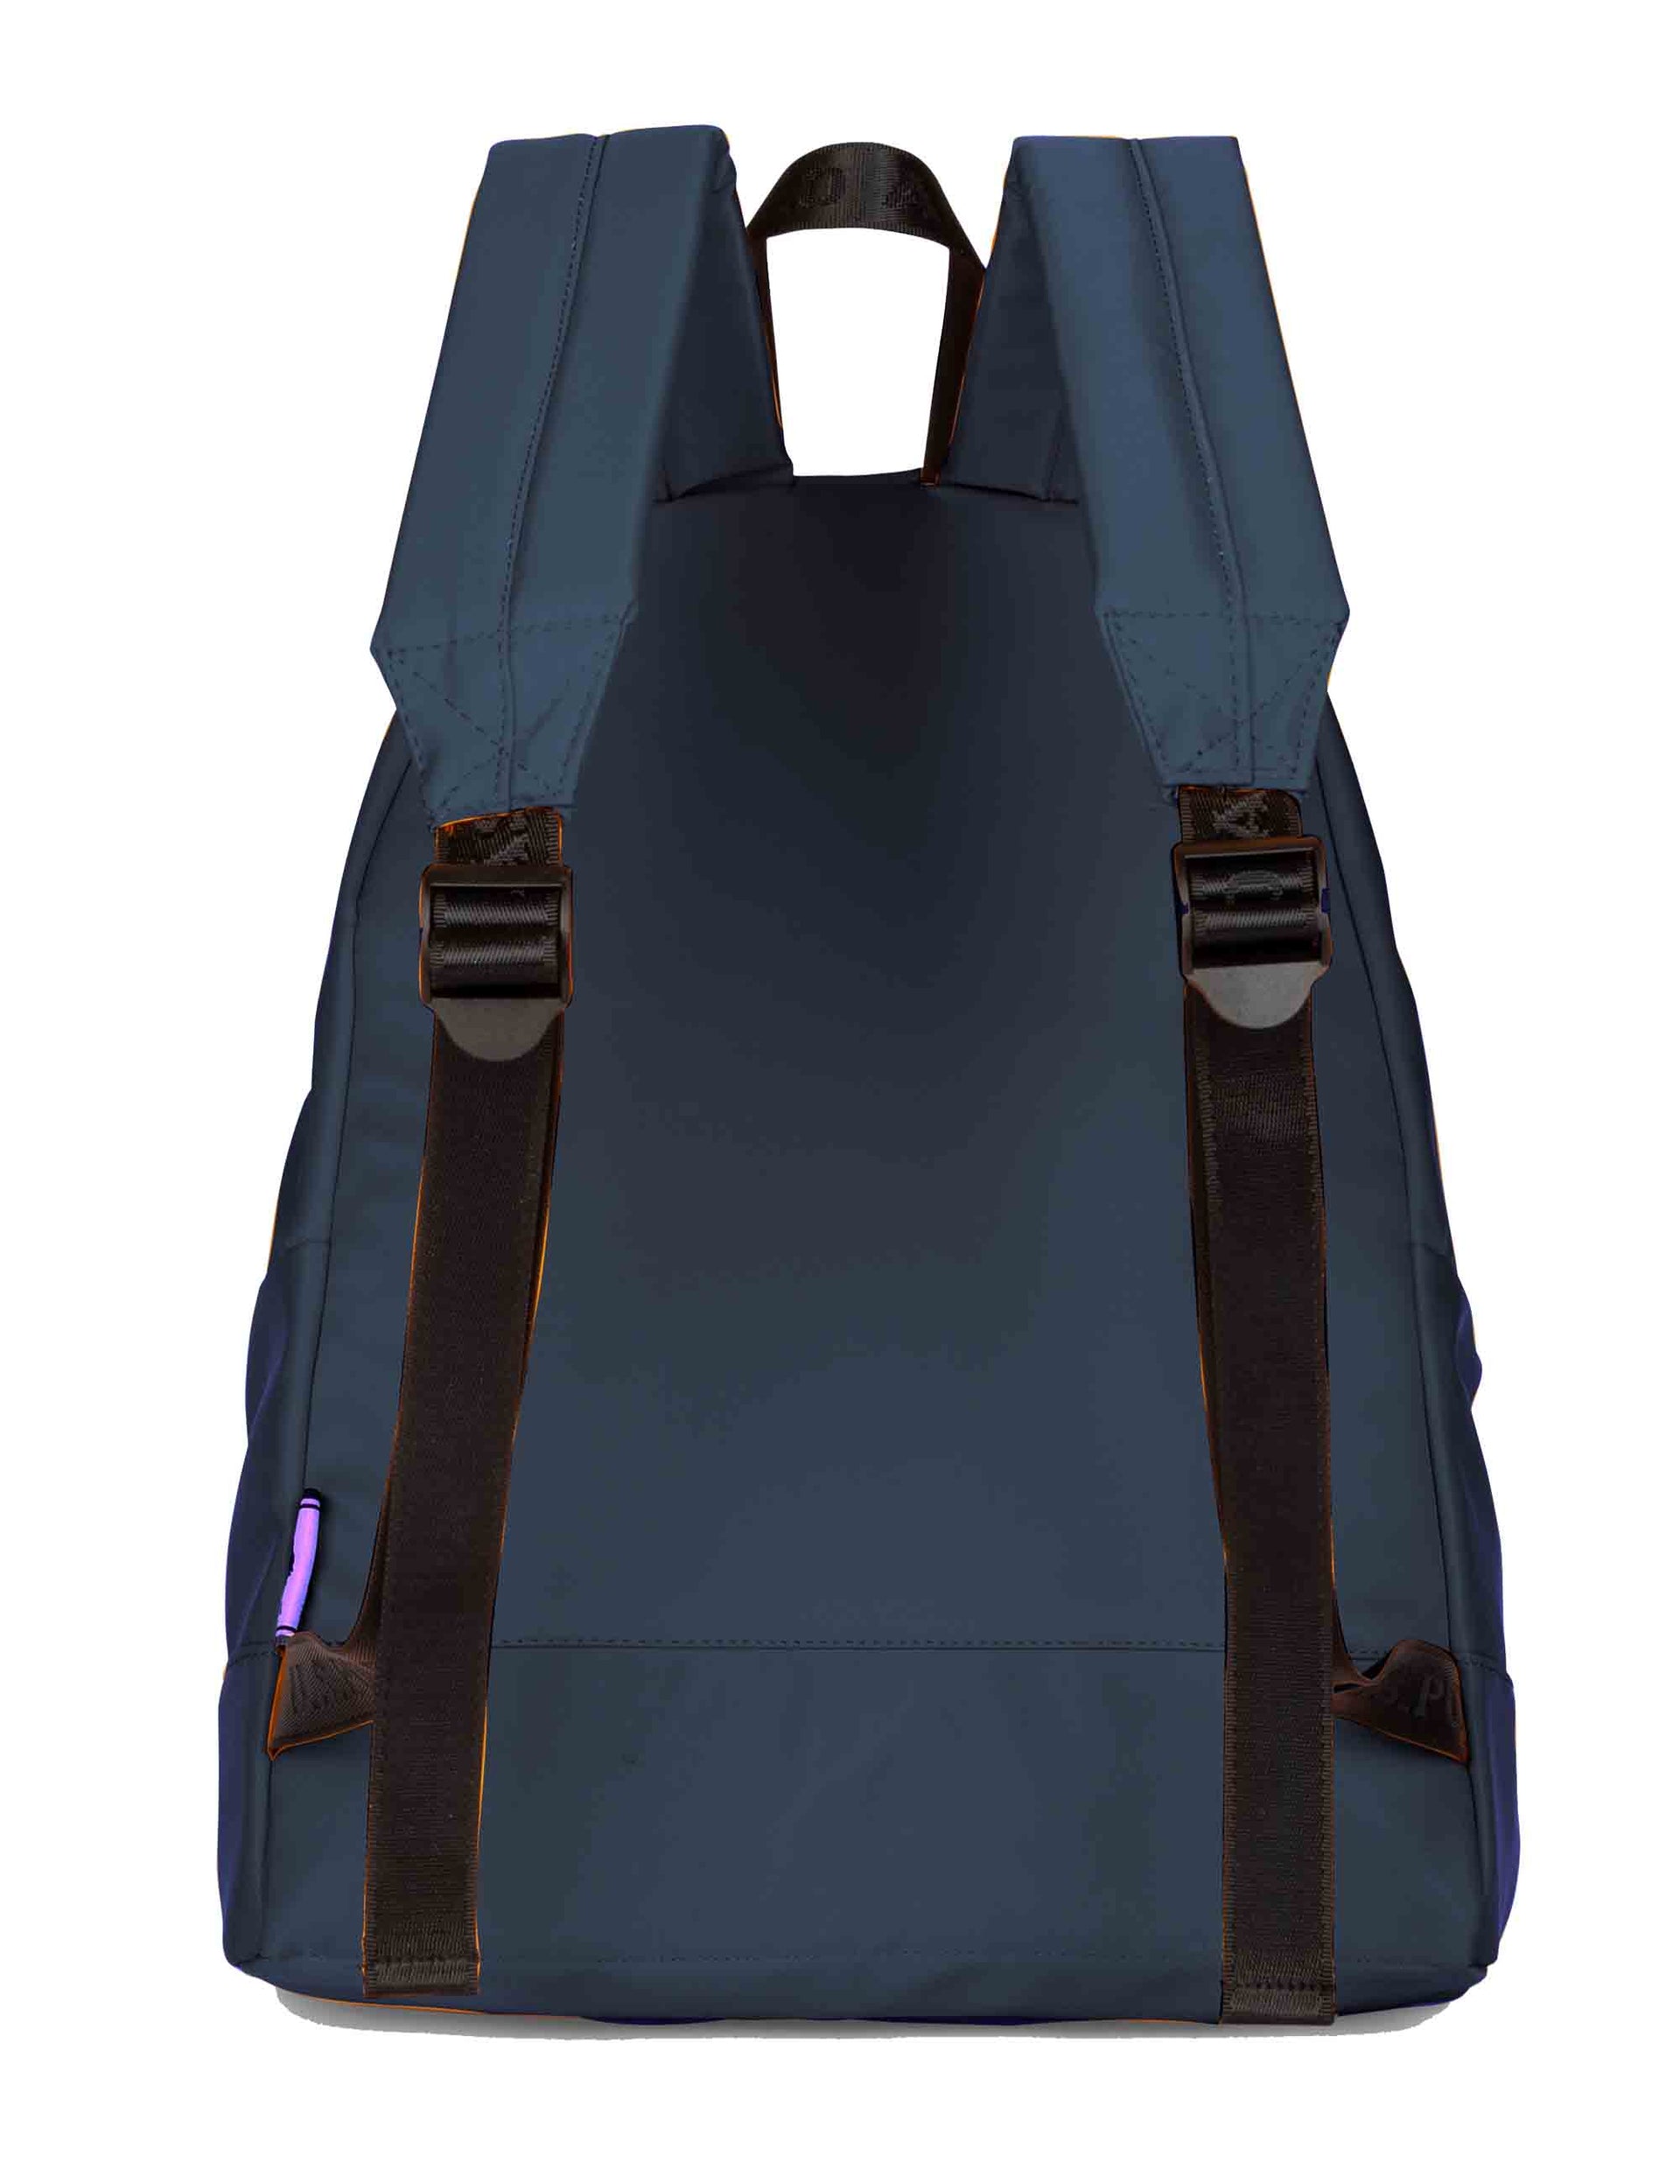 Bigfork men's backpacks in blue nylon